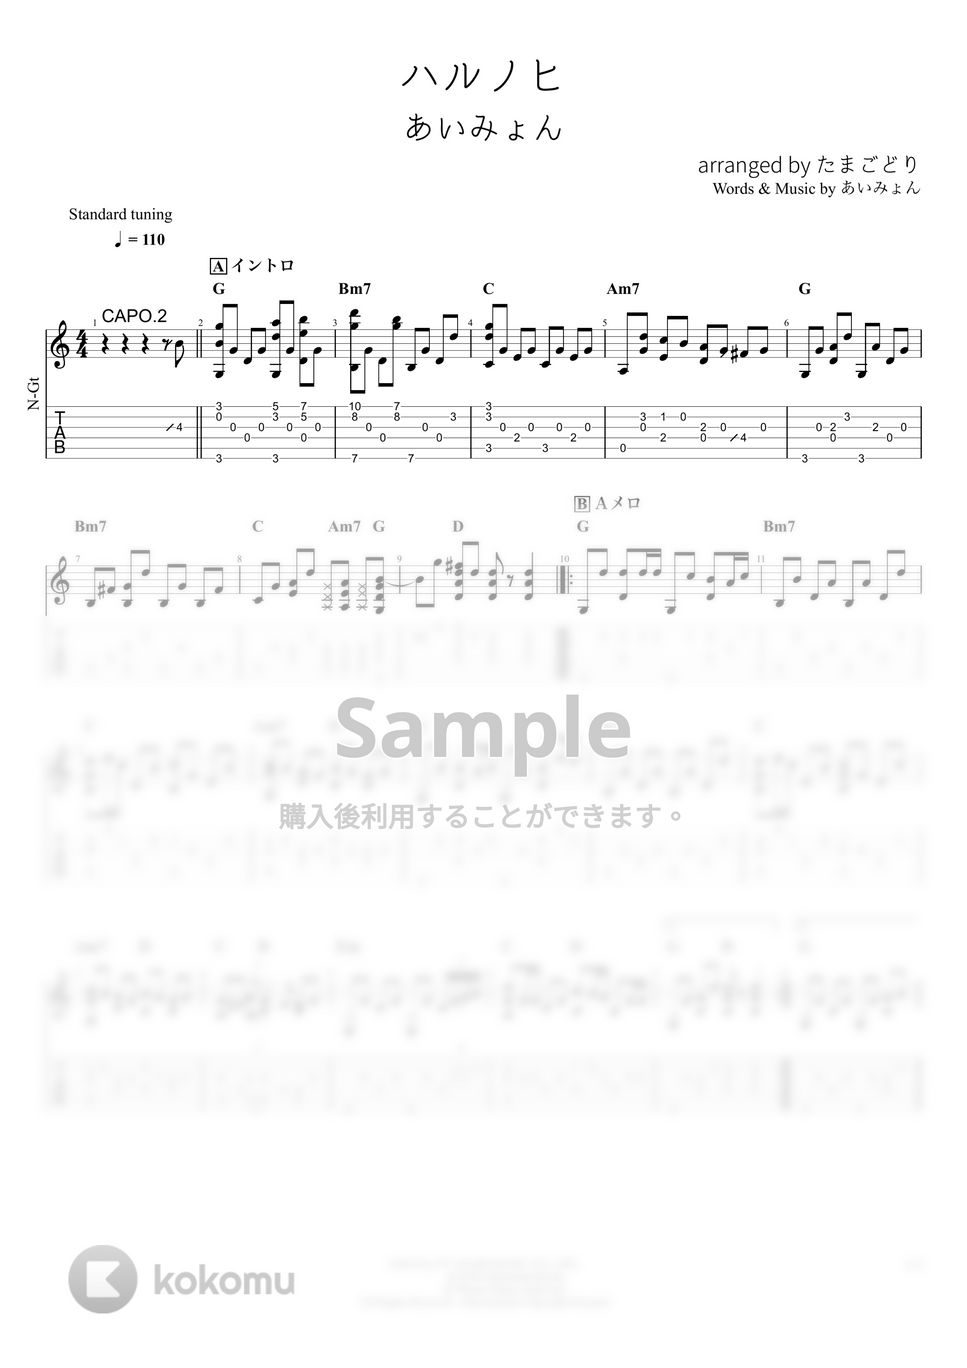 あいみょん - ハルノヒ (ソロギター) by たまごどり